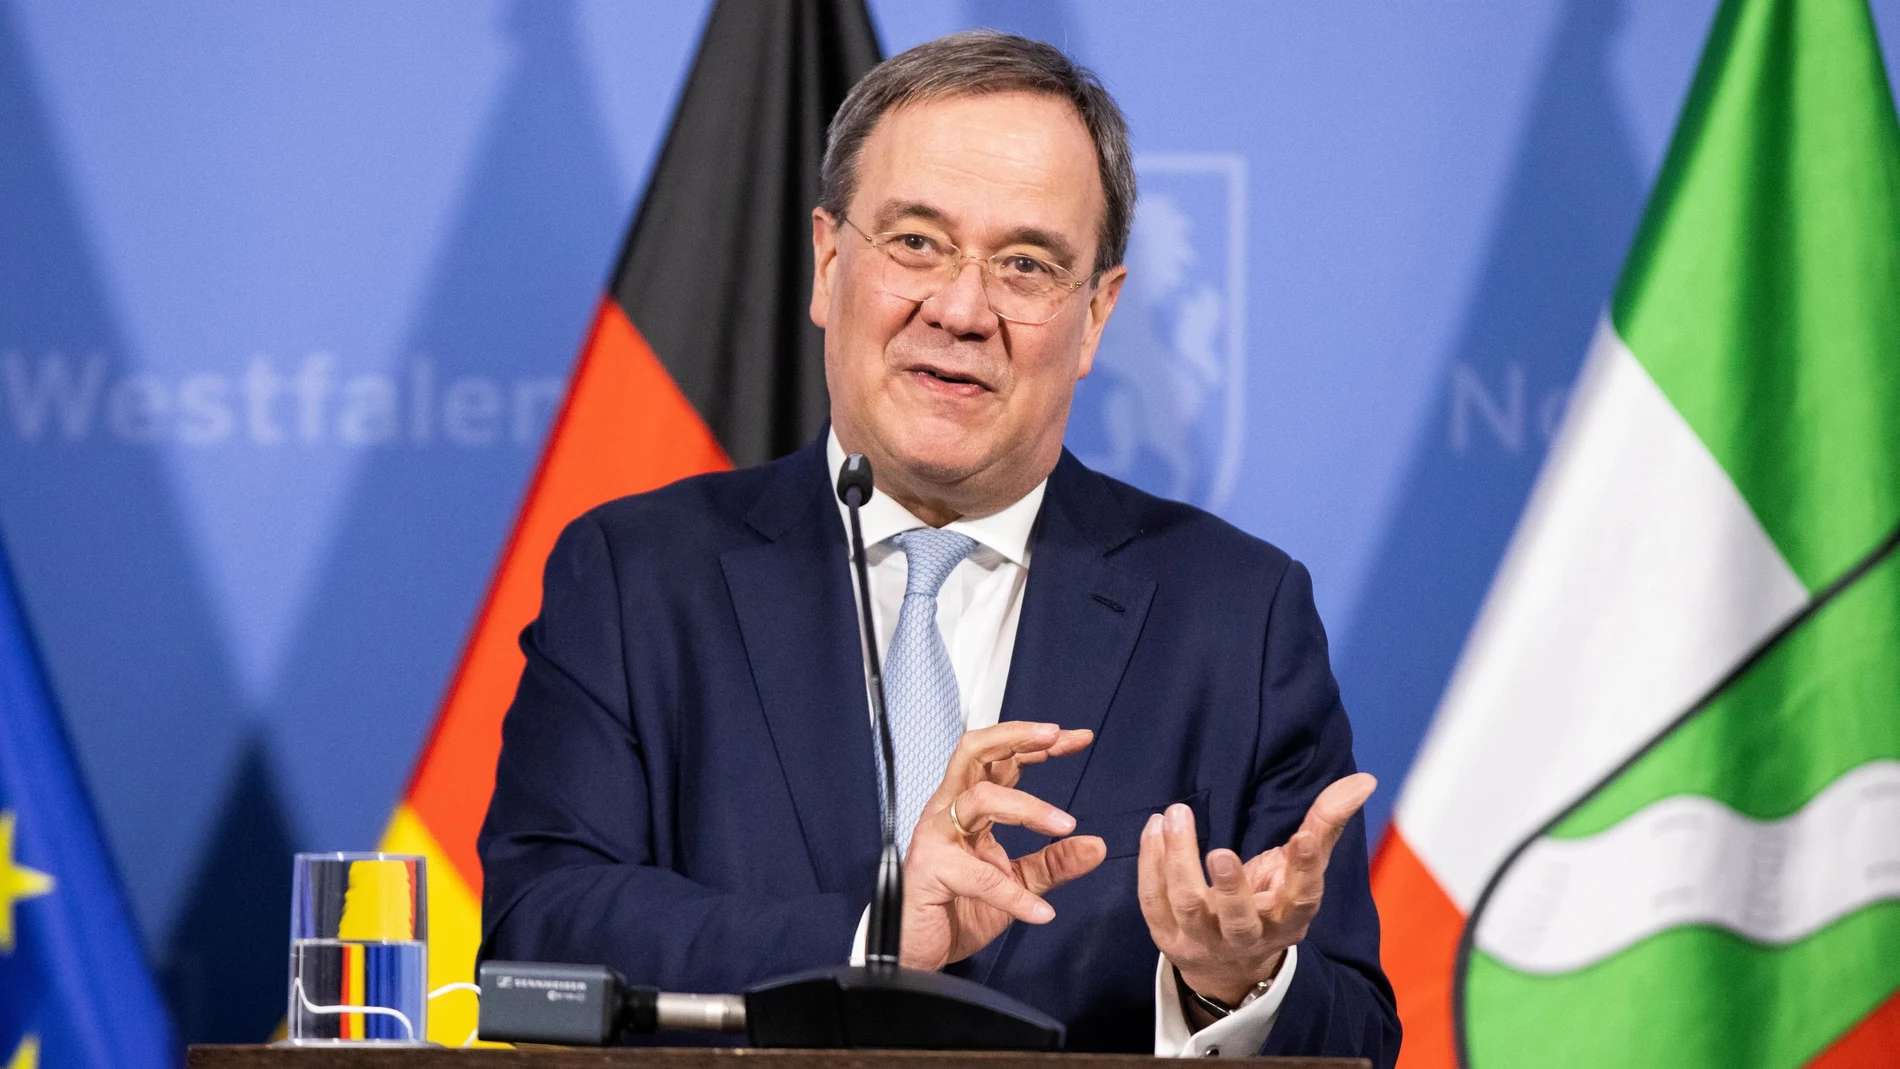 El líder de la CDU y presidente de Renania del Norte Westfalia, Armin Laschet